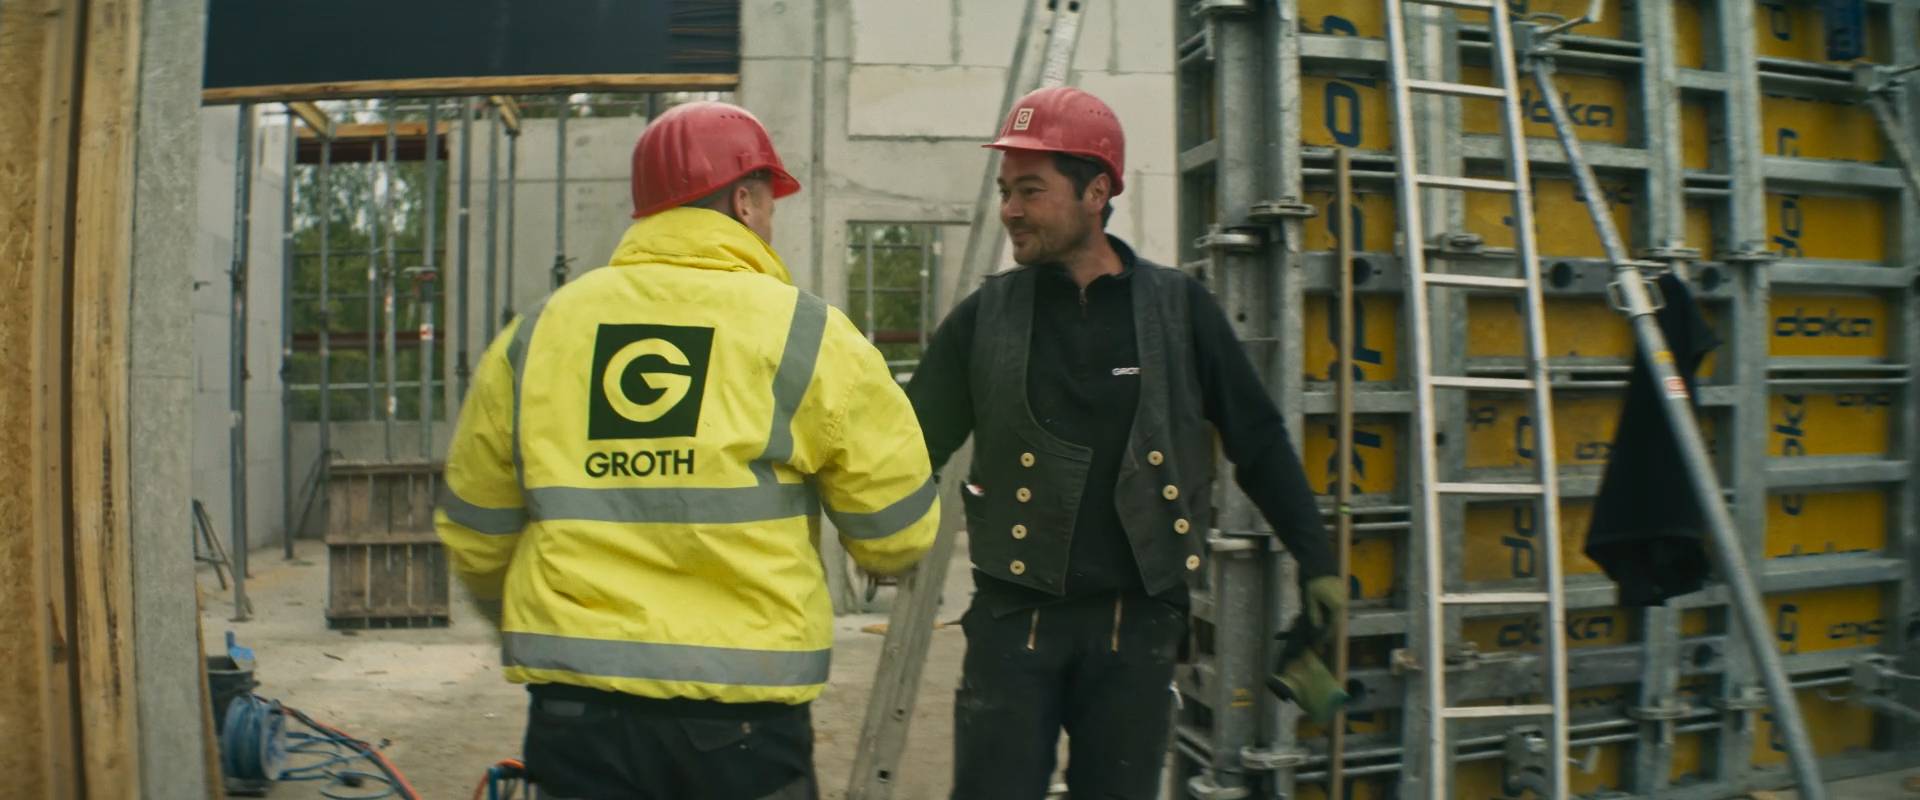 Groth & Co. - fairer Arbeitgeber im Norden